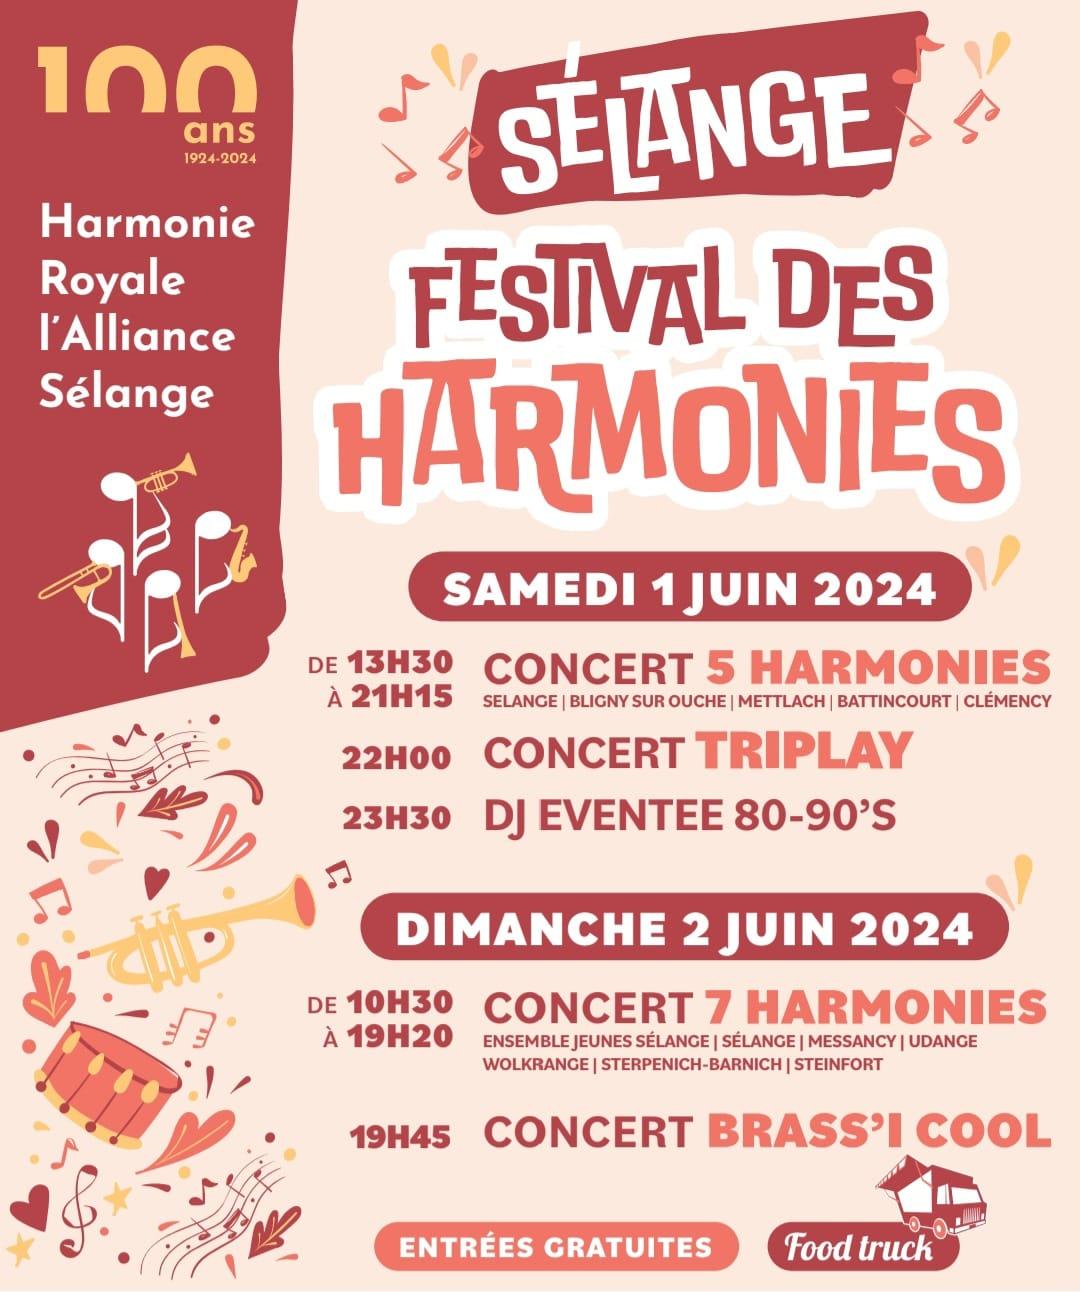 100 ans | Harmonie Royale l'Alliance Sélange